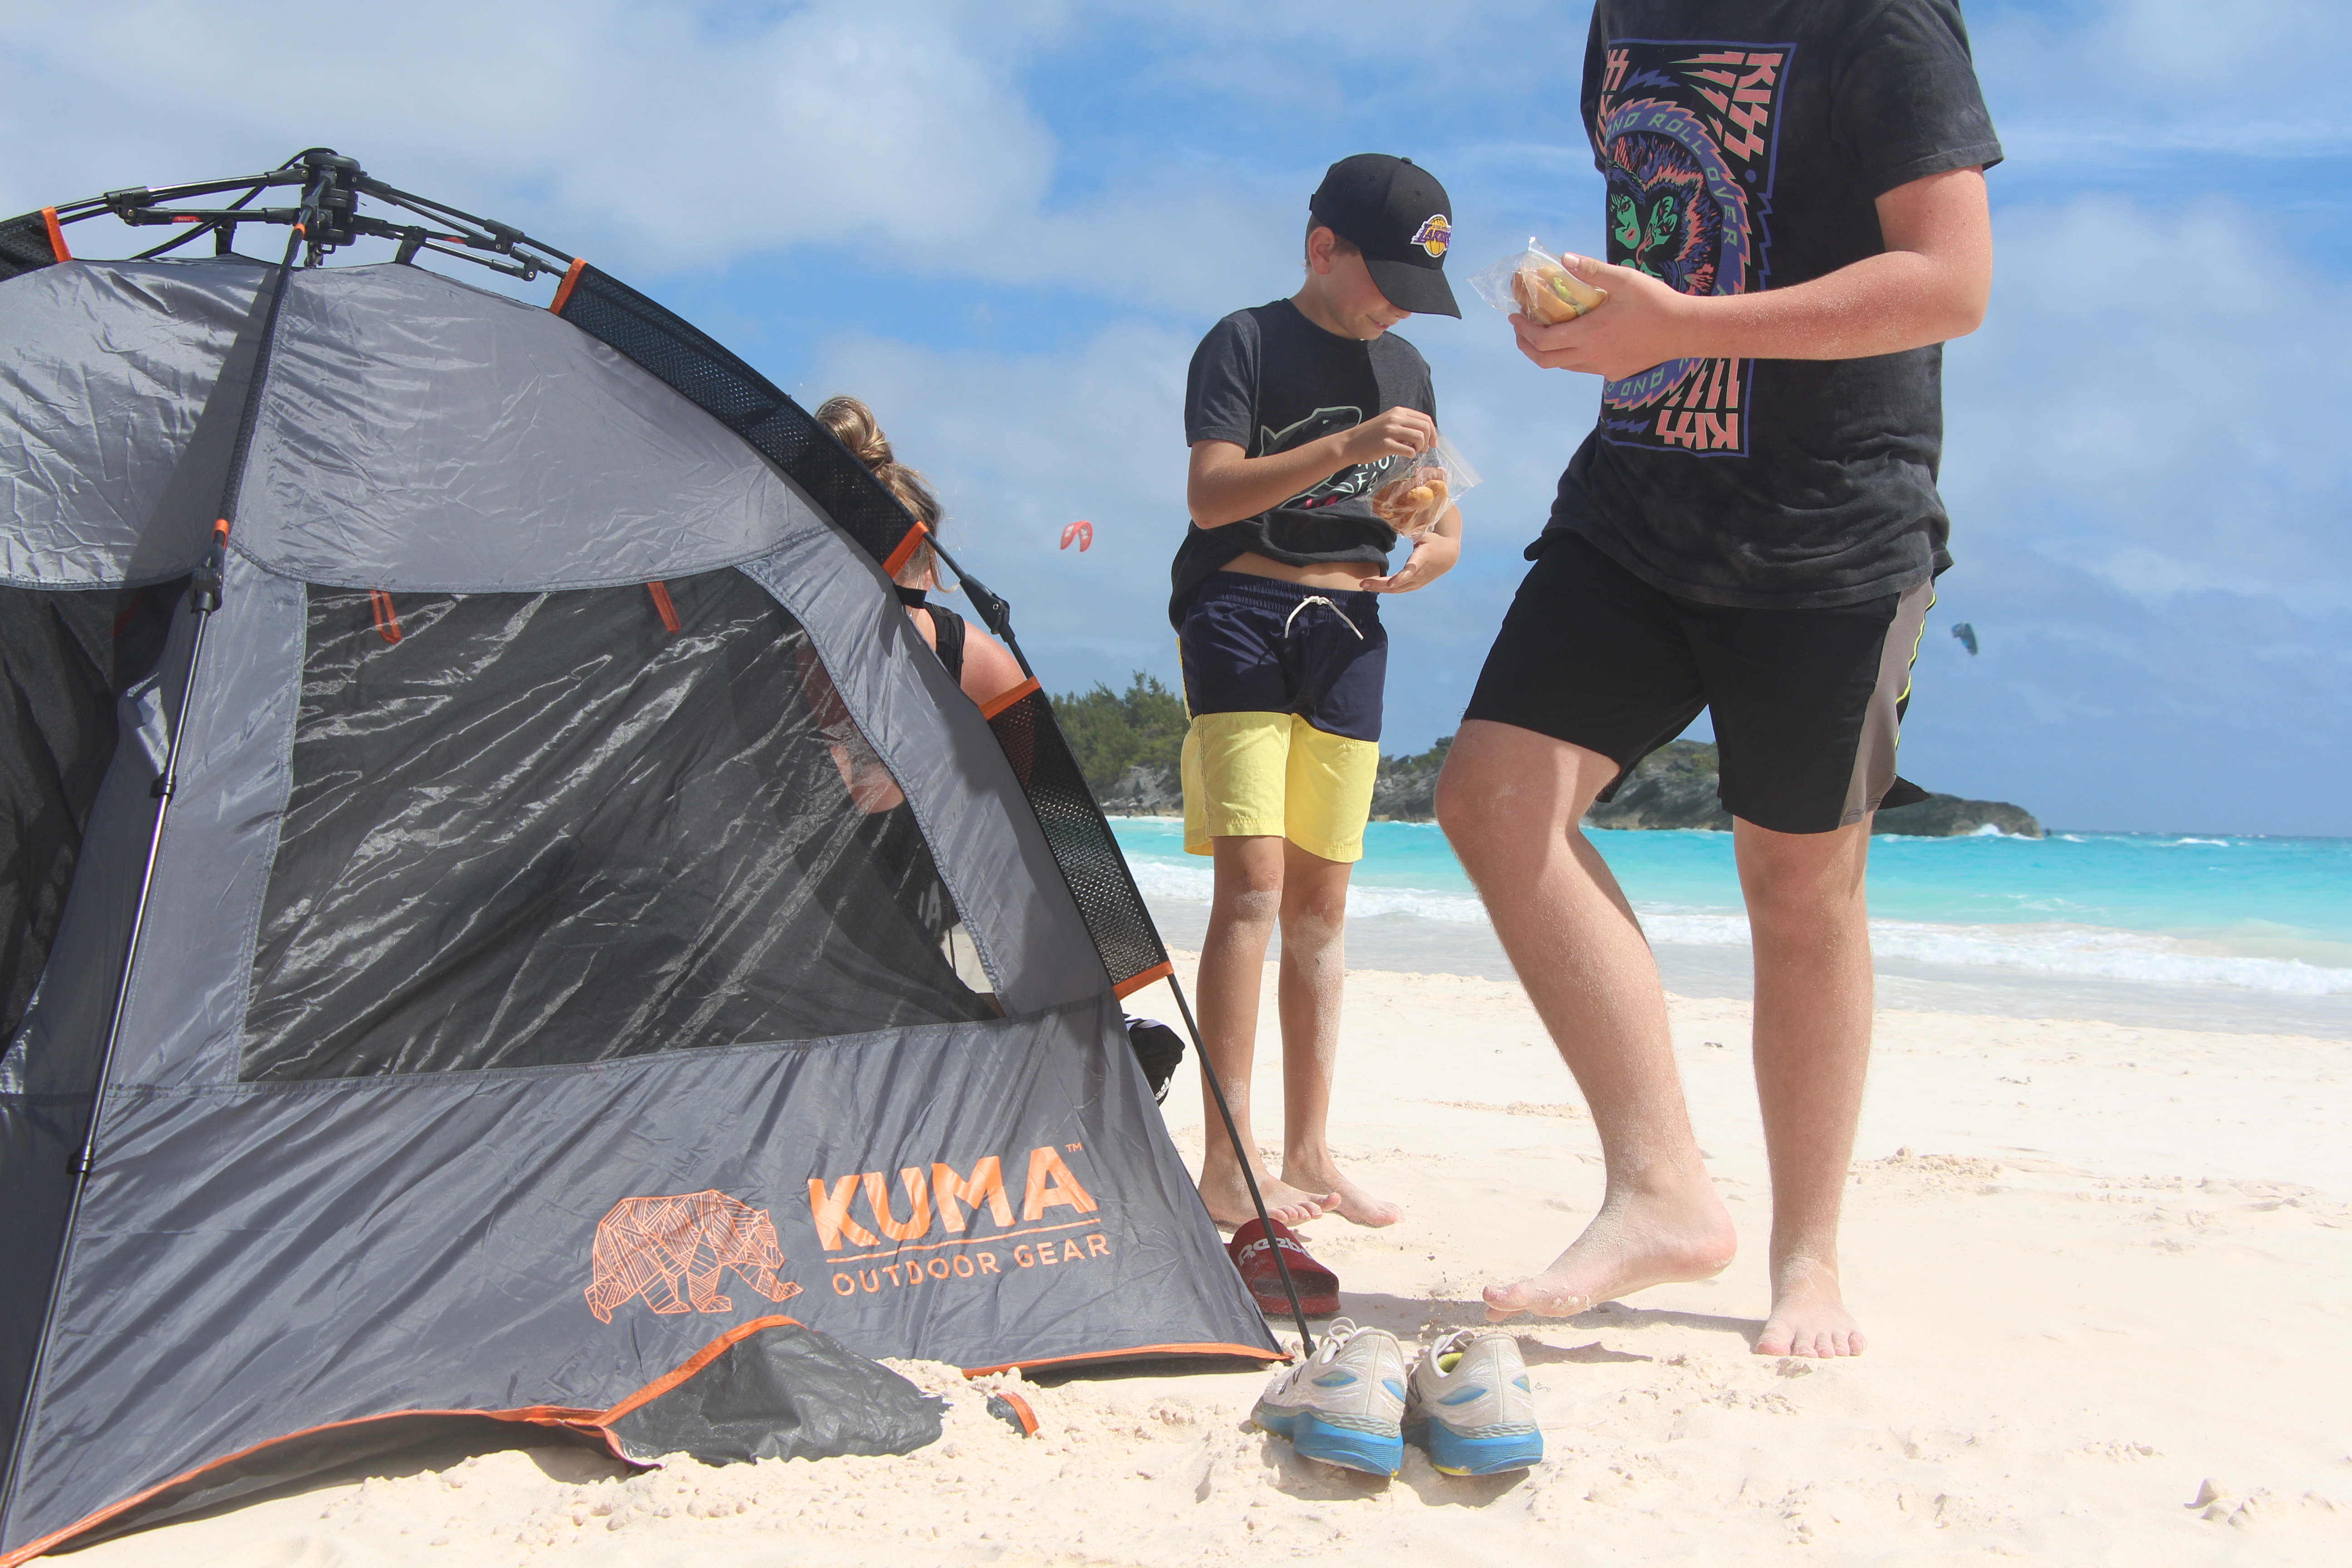 Kuma tent on the beach